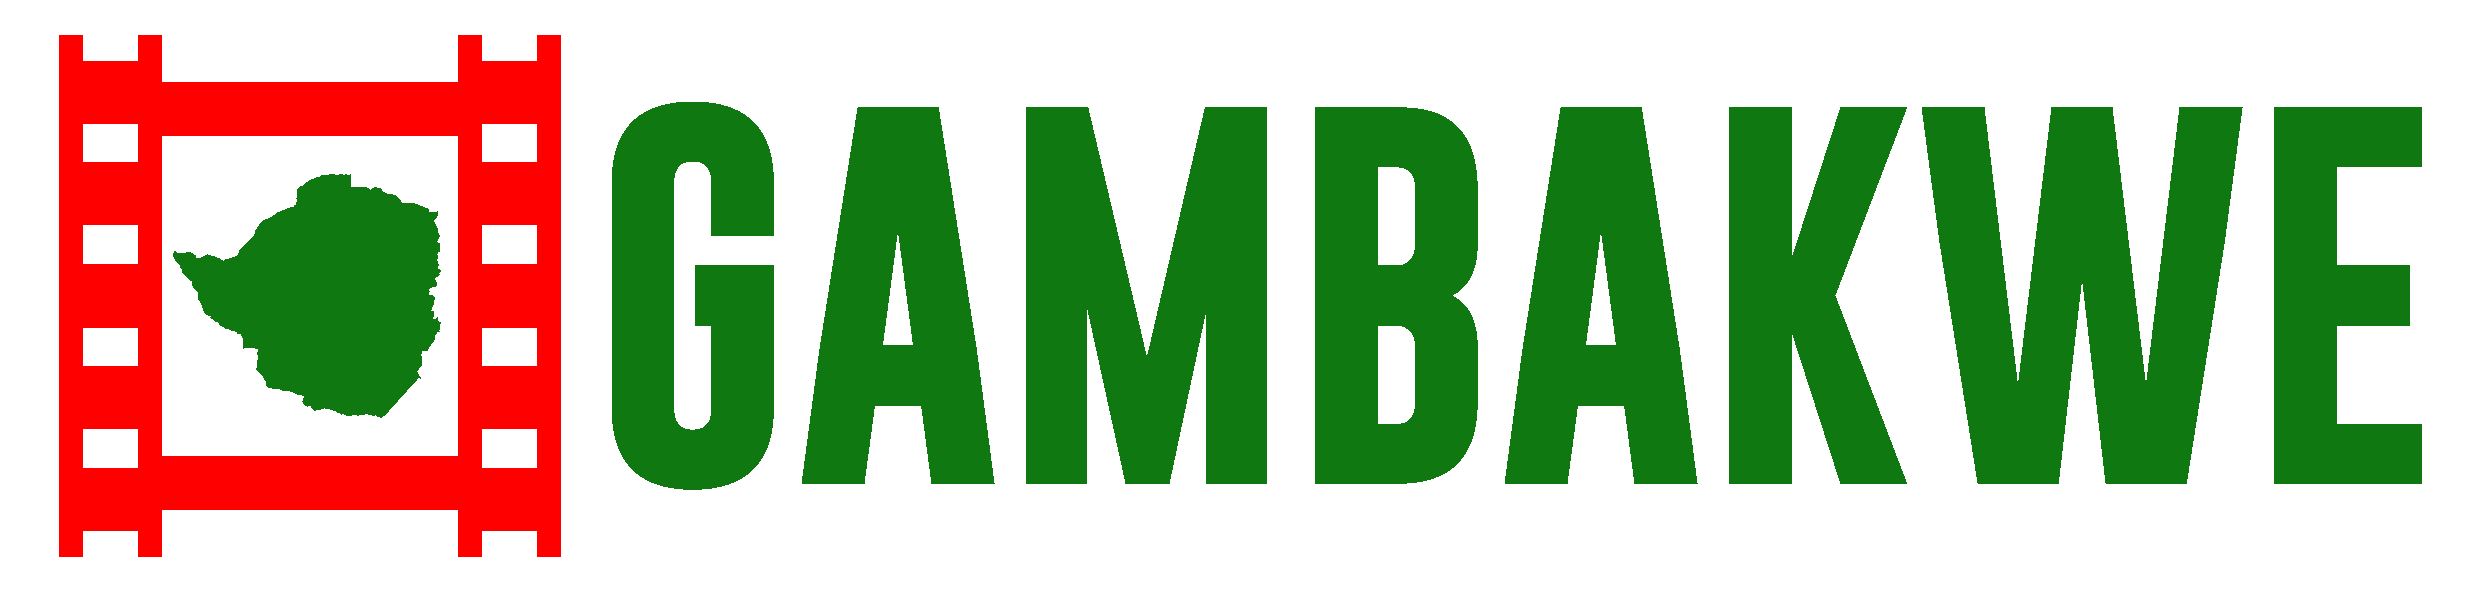 gambakwe.com